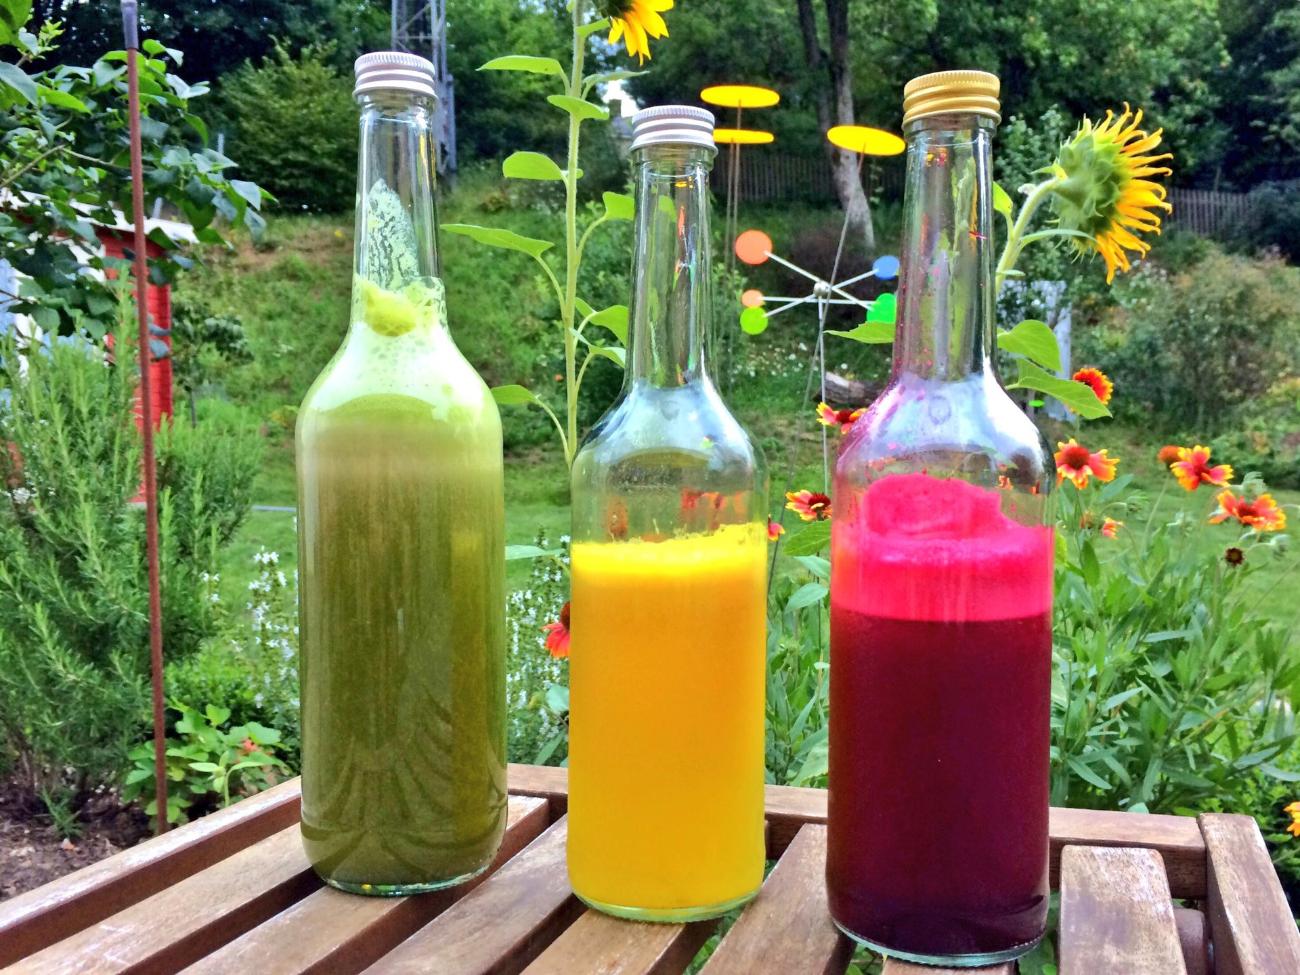 Man sieht drei Glasflaschen auf einem Tisch im Garten stehen, die mit farbigen Säften gefüllt sind